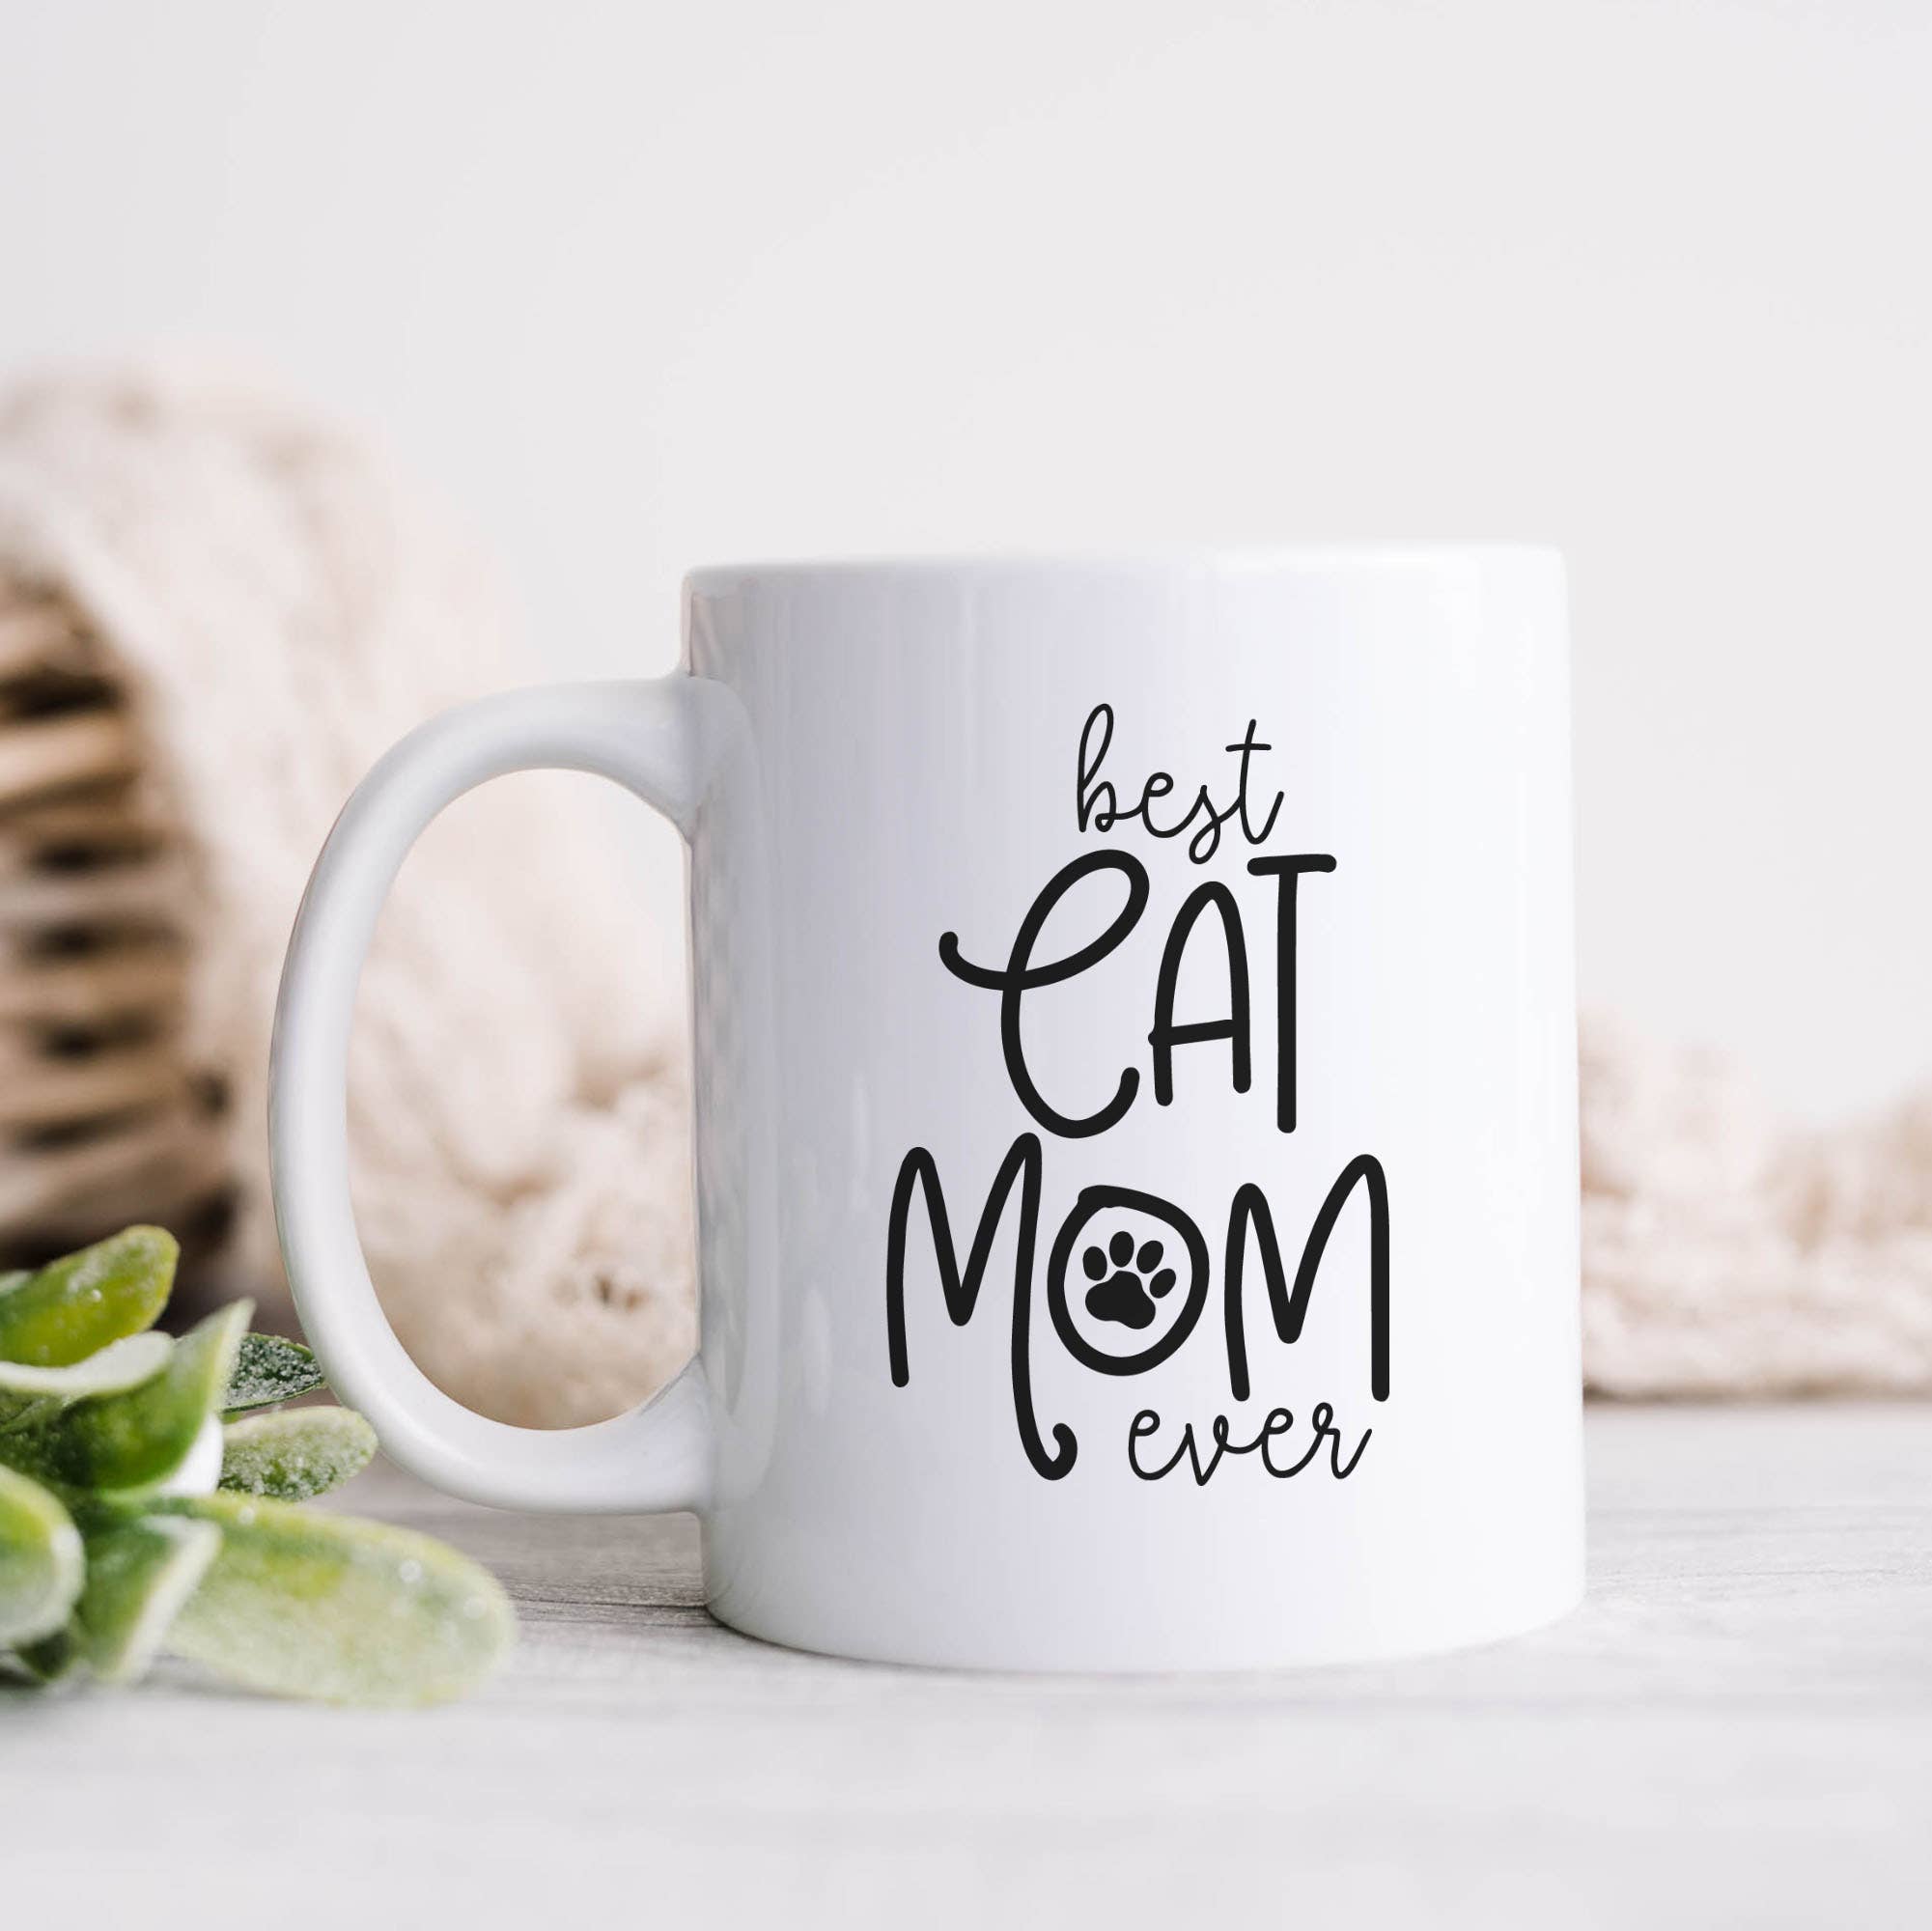 Best Cat Mom Ever Ceramic Mug